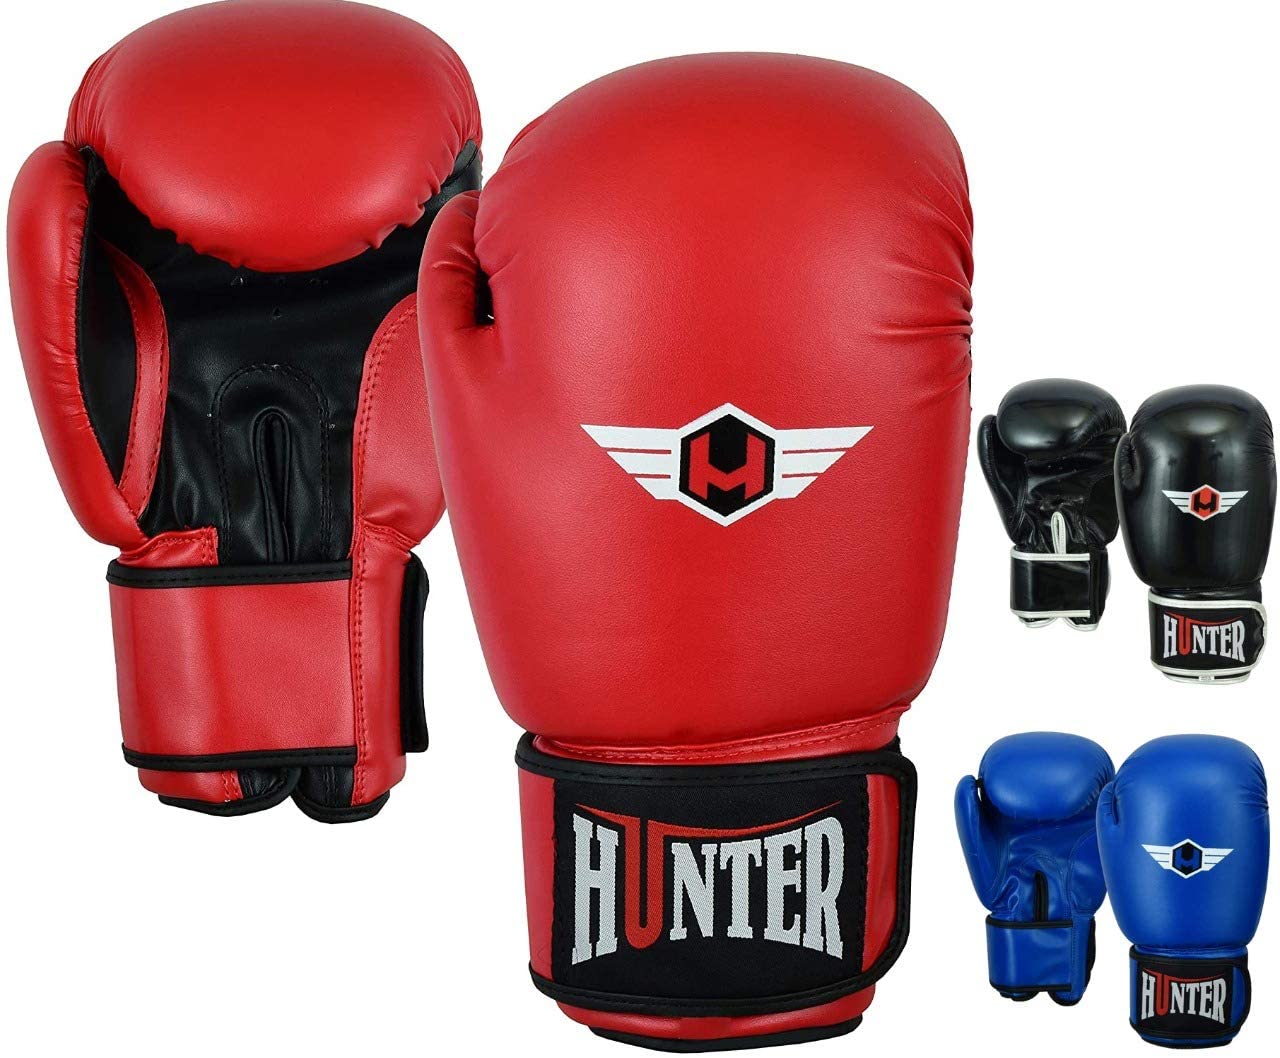 Heavy Bag Gloves Women Boxing Gloves & MMA Gloves… Punching Bag Gloves Muay Thai Gloves Sparring Gloves HUNTER Boxing Gloves Boxing Gloves for Men 